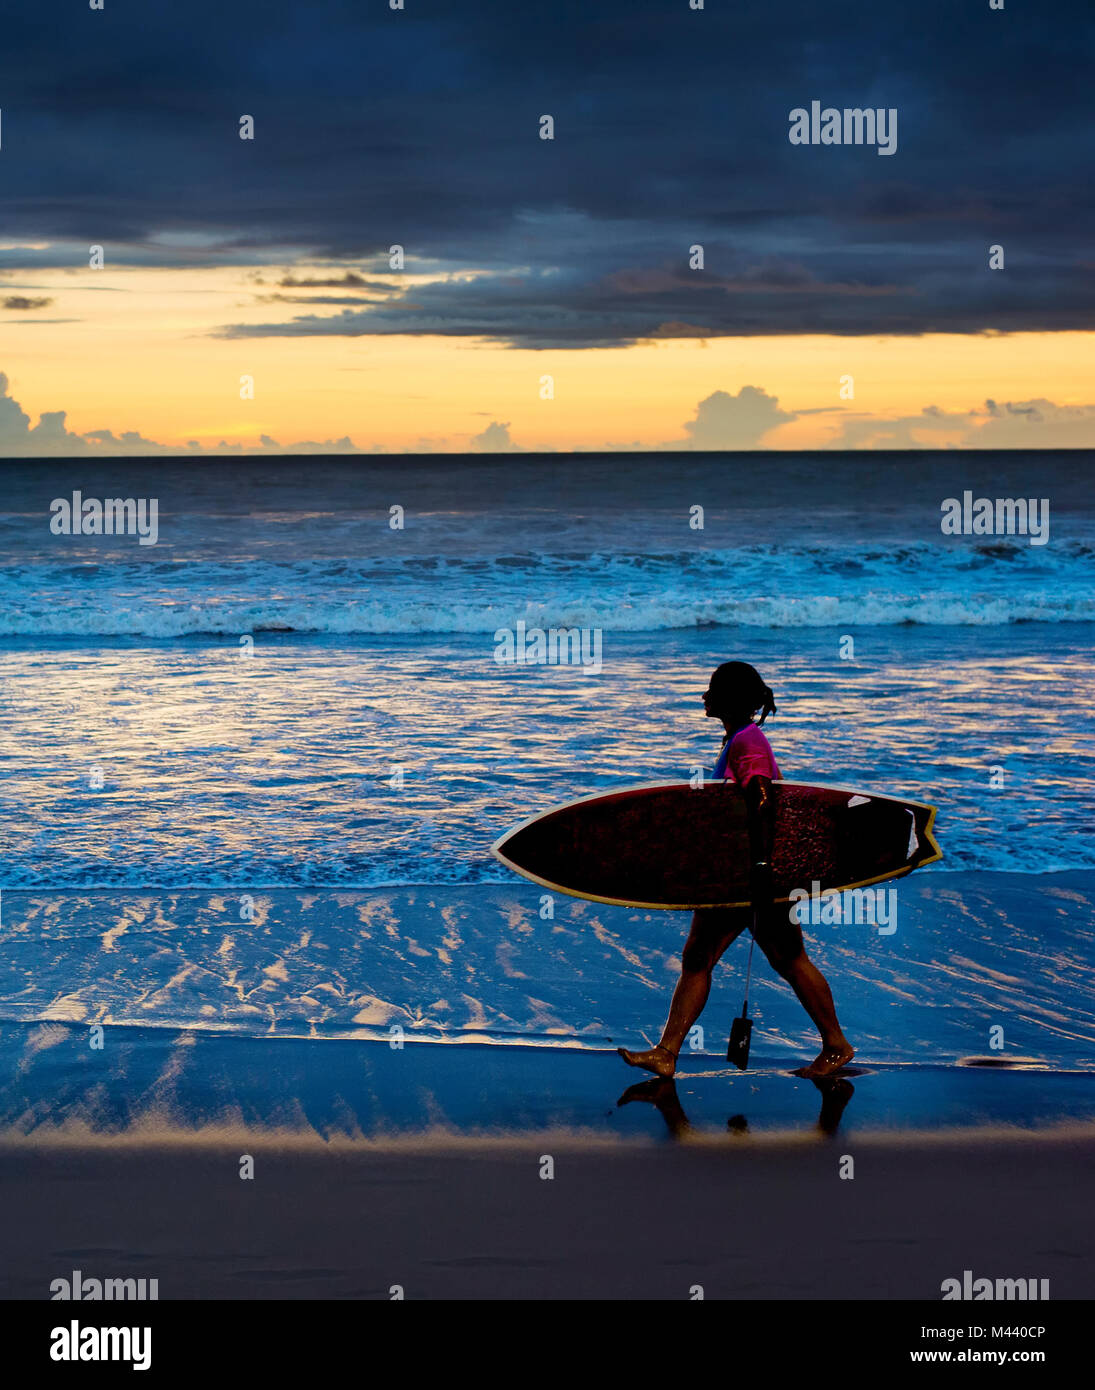 Surfgirl marche sur la plage avec une planche de surf au coucher du soleil. L'île de Bali Banque D'Images